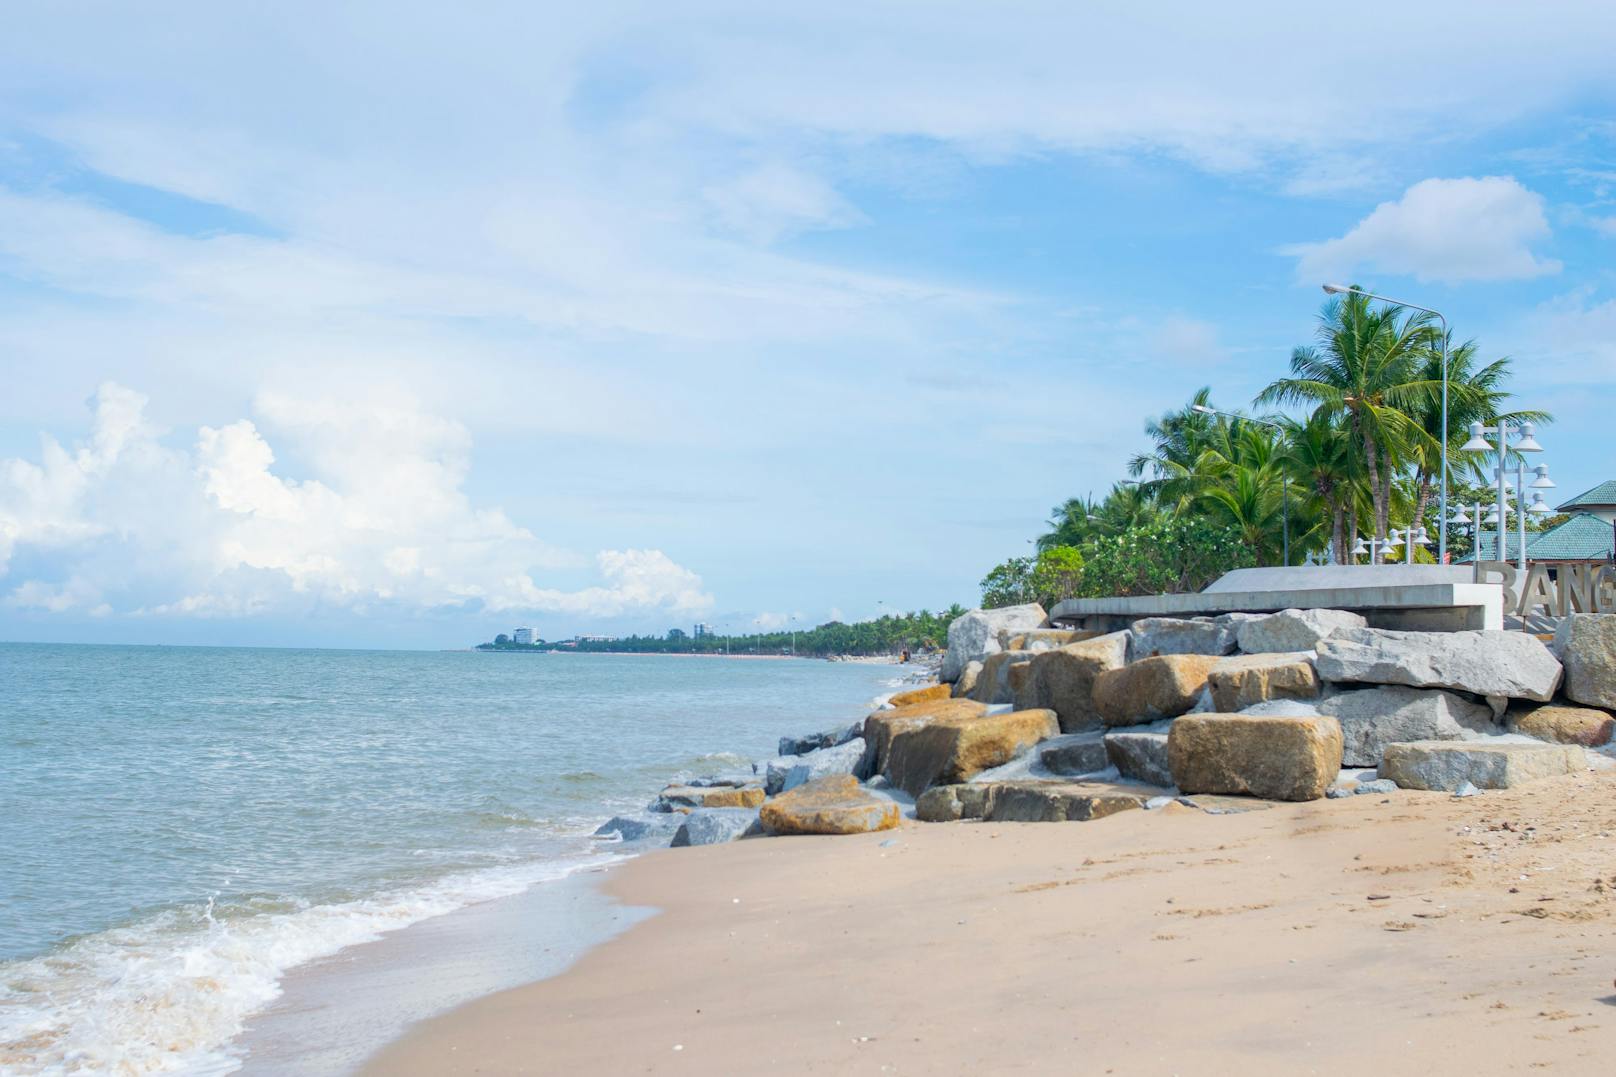 Gerade der Strand von Bang Saen ist ein besonders beliebtes Touristenziel in Thailand.